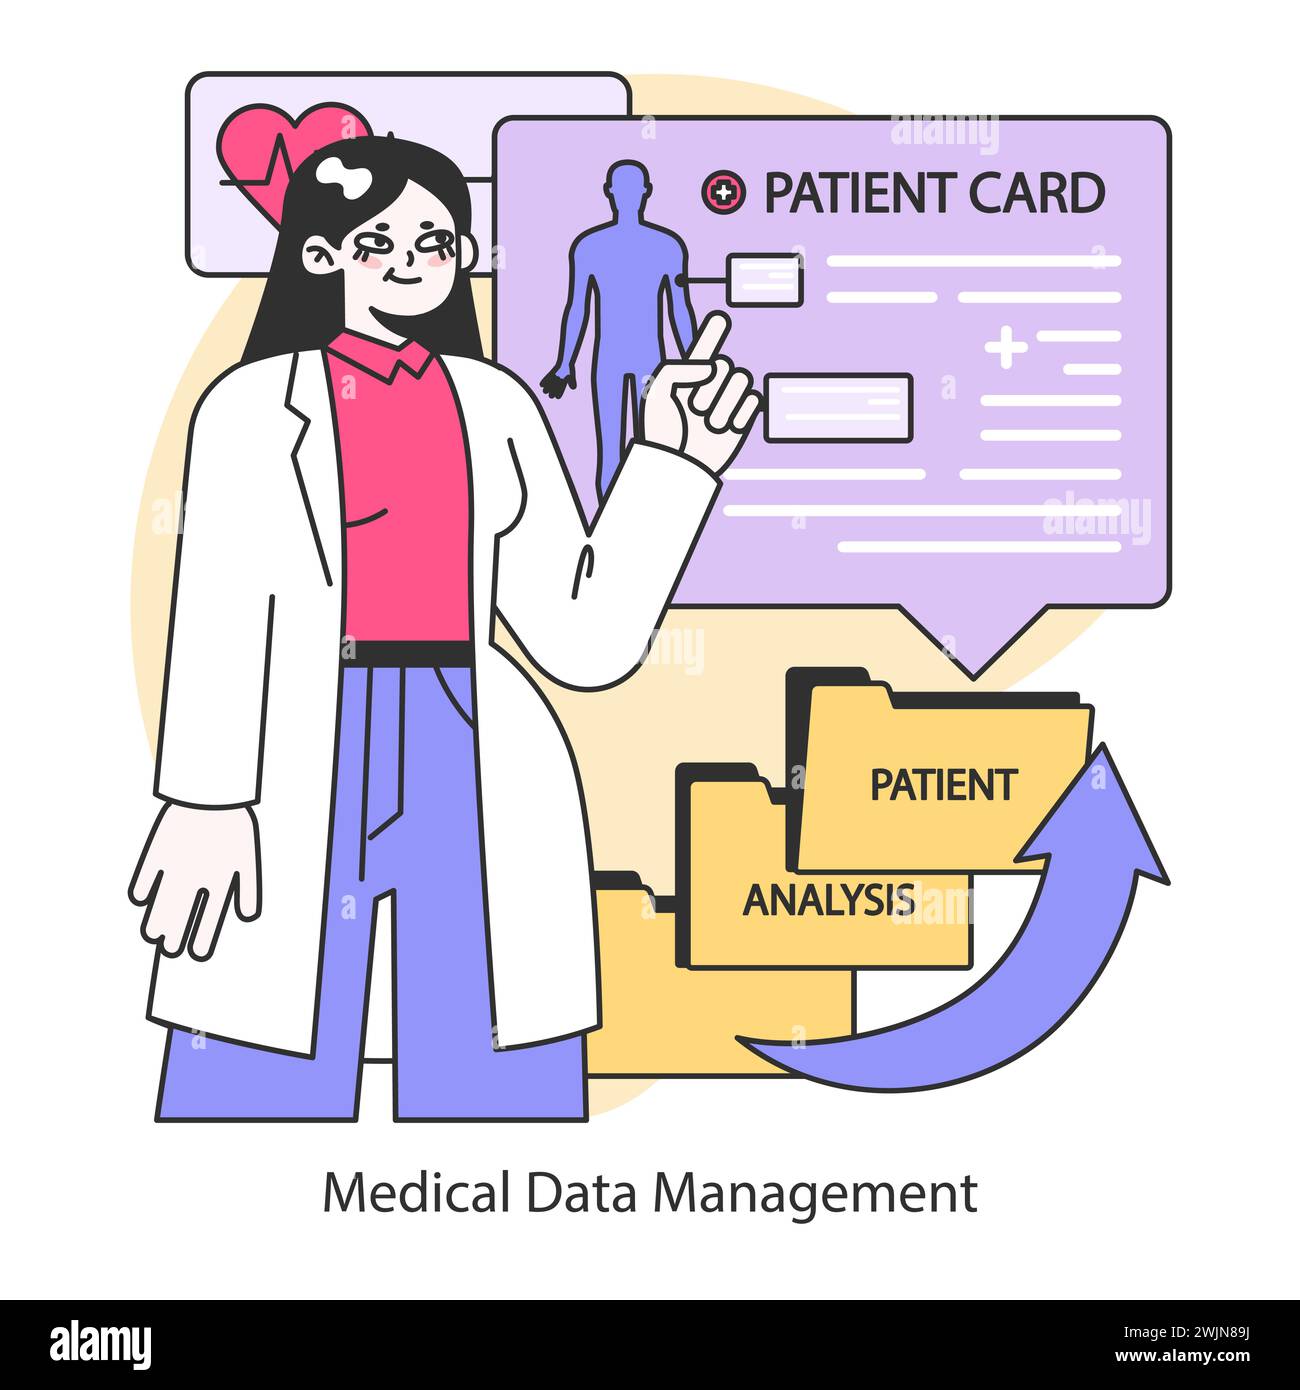 Medizinisches Datenmanagement-Konzept. Digitalisierung von Patientenakten für eine optimierte Gesundheitsversorgung. Verbesserte Analyse- und Behandlungspläne. Illustration des flachen Vektors. Stock Vektor